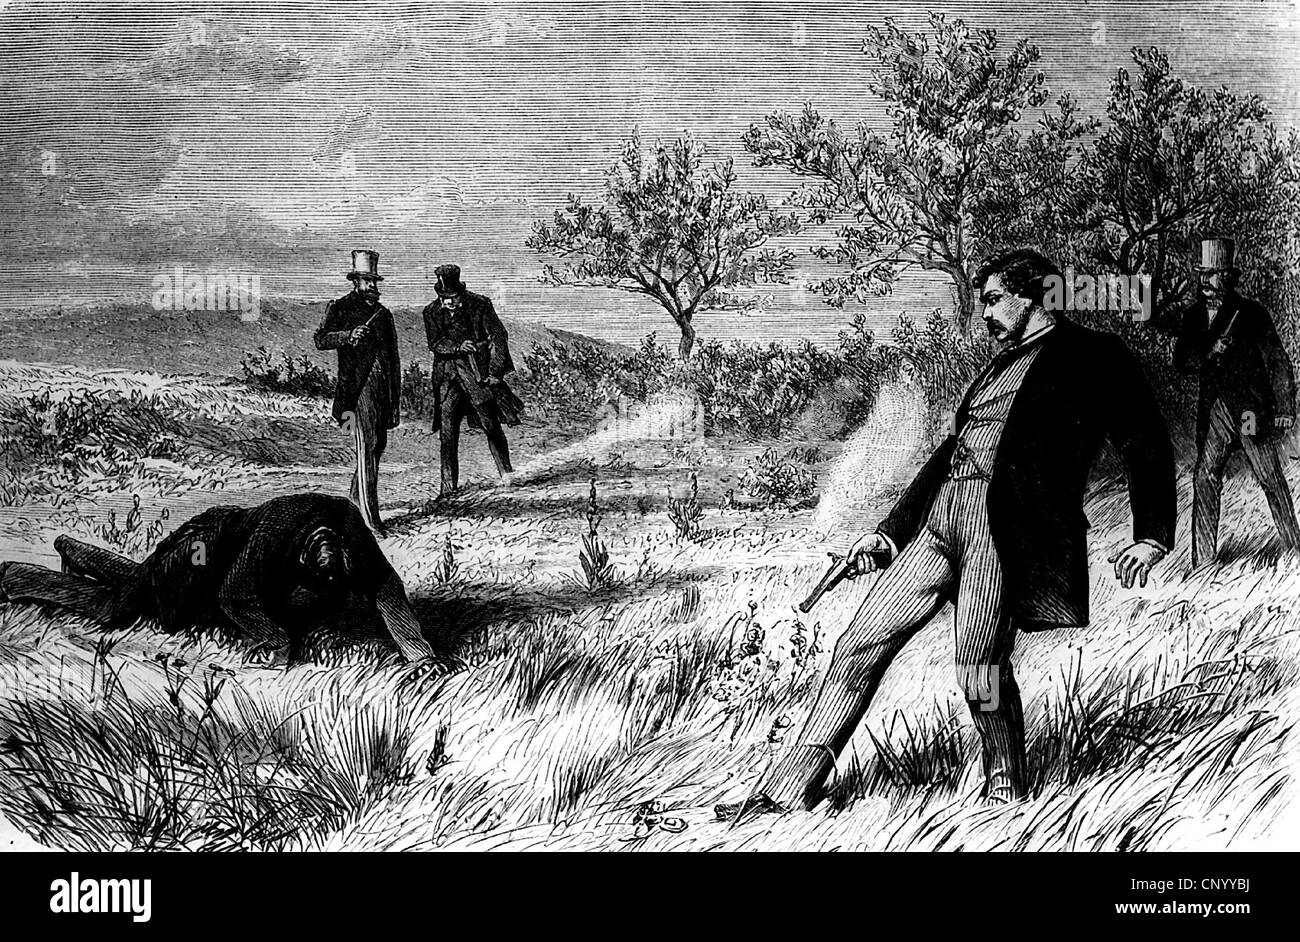 Justicia, duelo, duelo con pistolas, basado en dibujo de W. Katzler, grabado en madera, 1872, Derechos adicionales-Clearences-no disponible Foto de stock